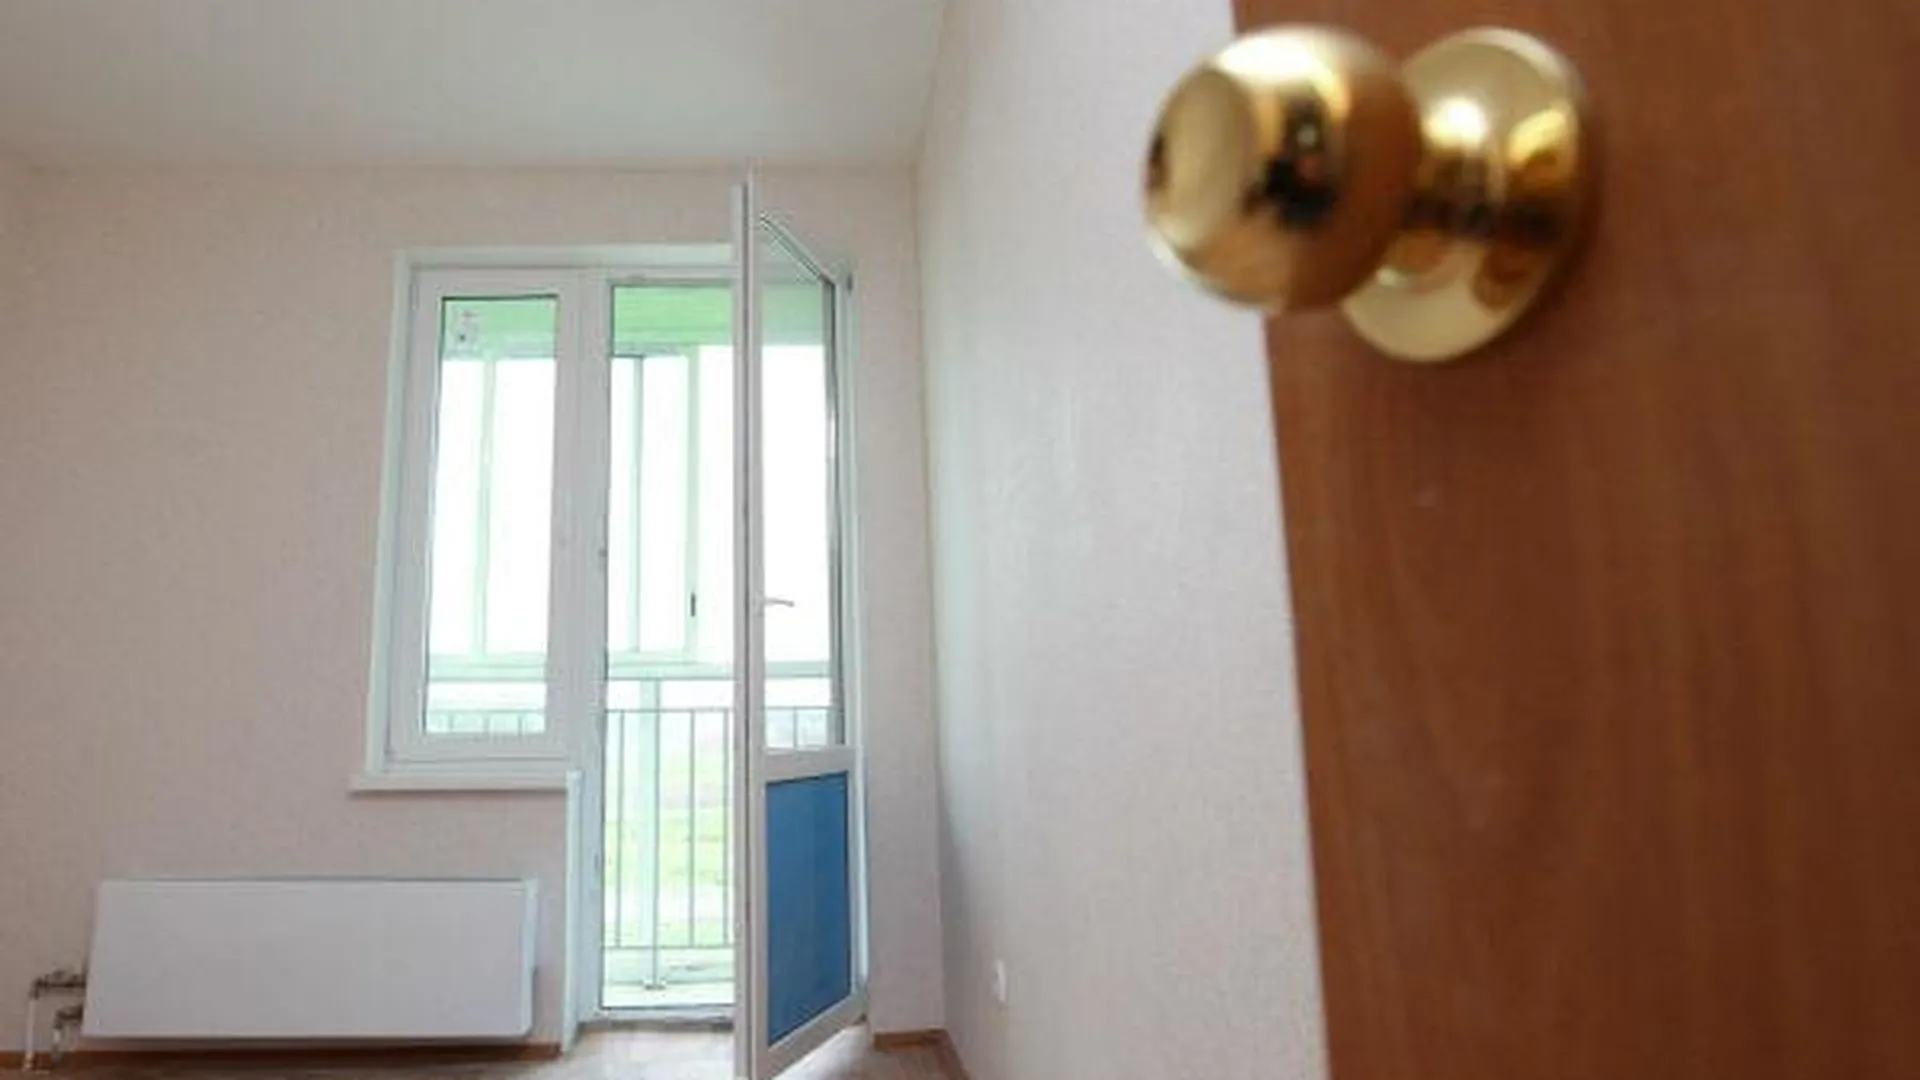 Пять семей в Люберецком районе получат соцвыплаты на жилье